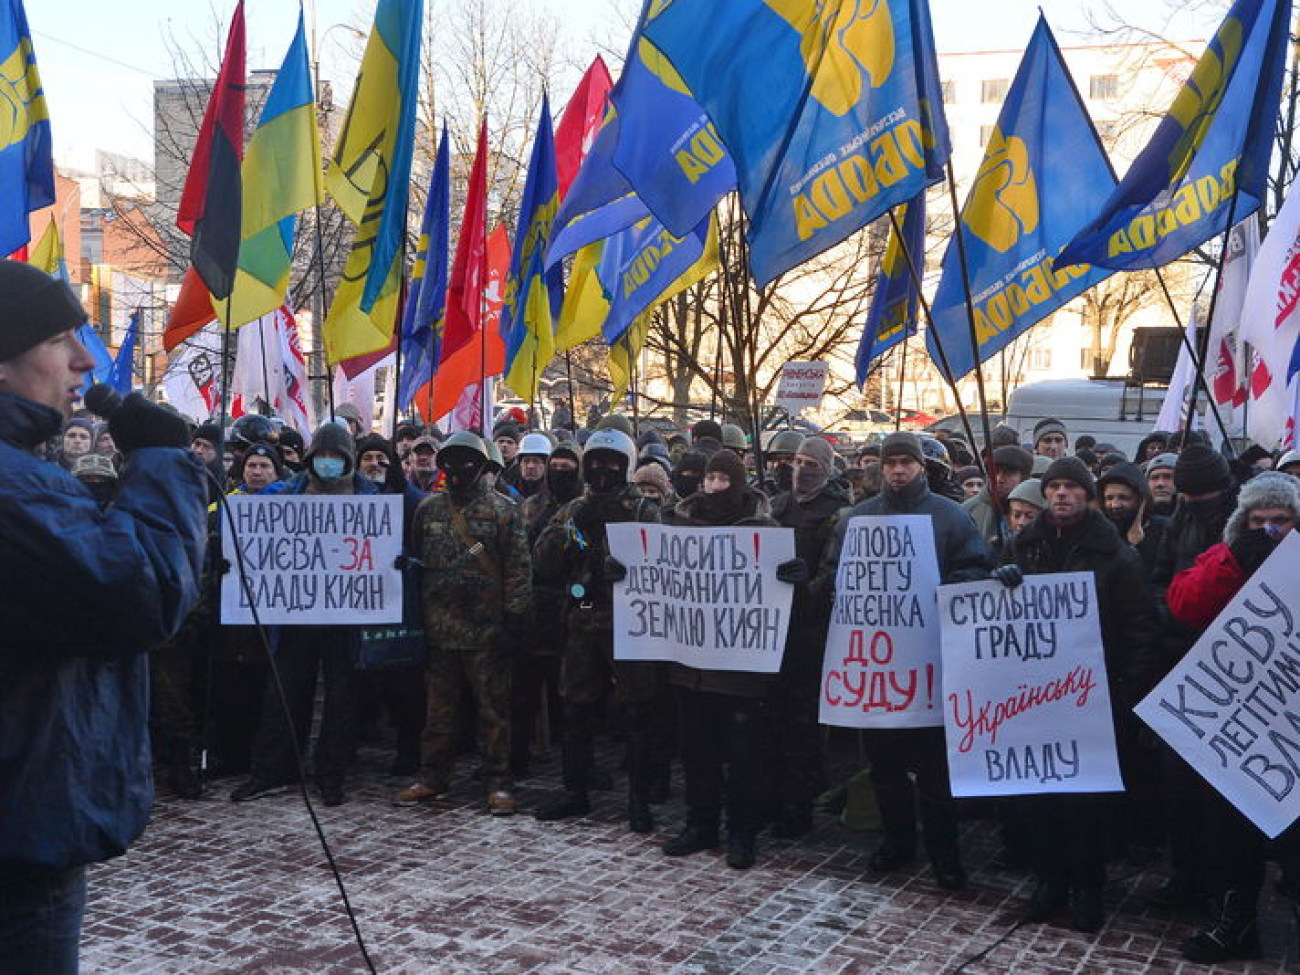 Киев получил бюджет: обошлось без драк и потасовок, 4 февраля 2014г.